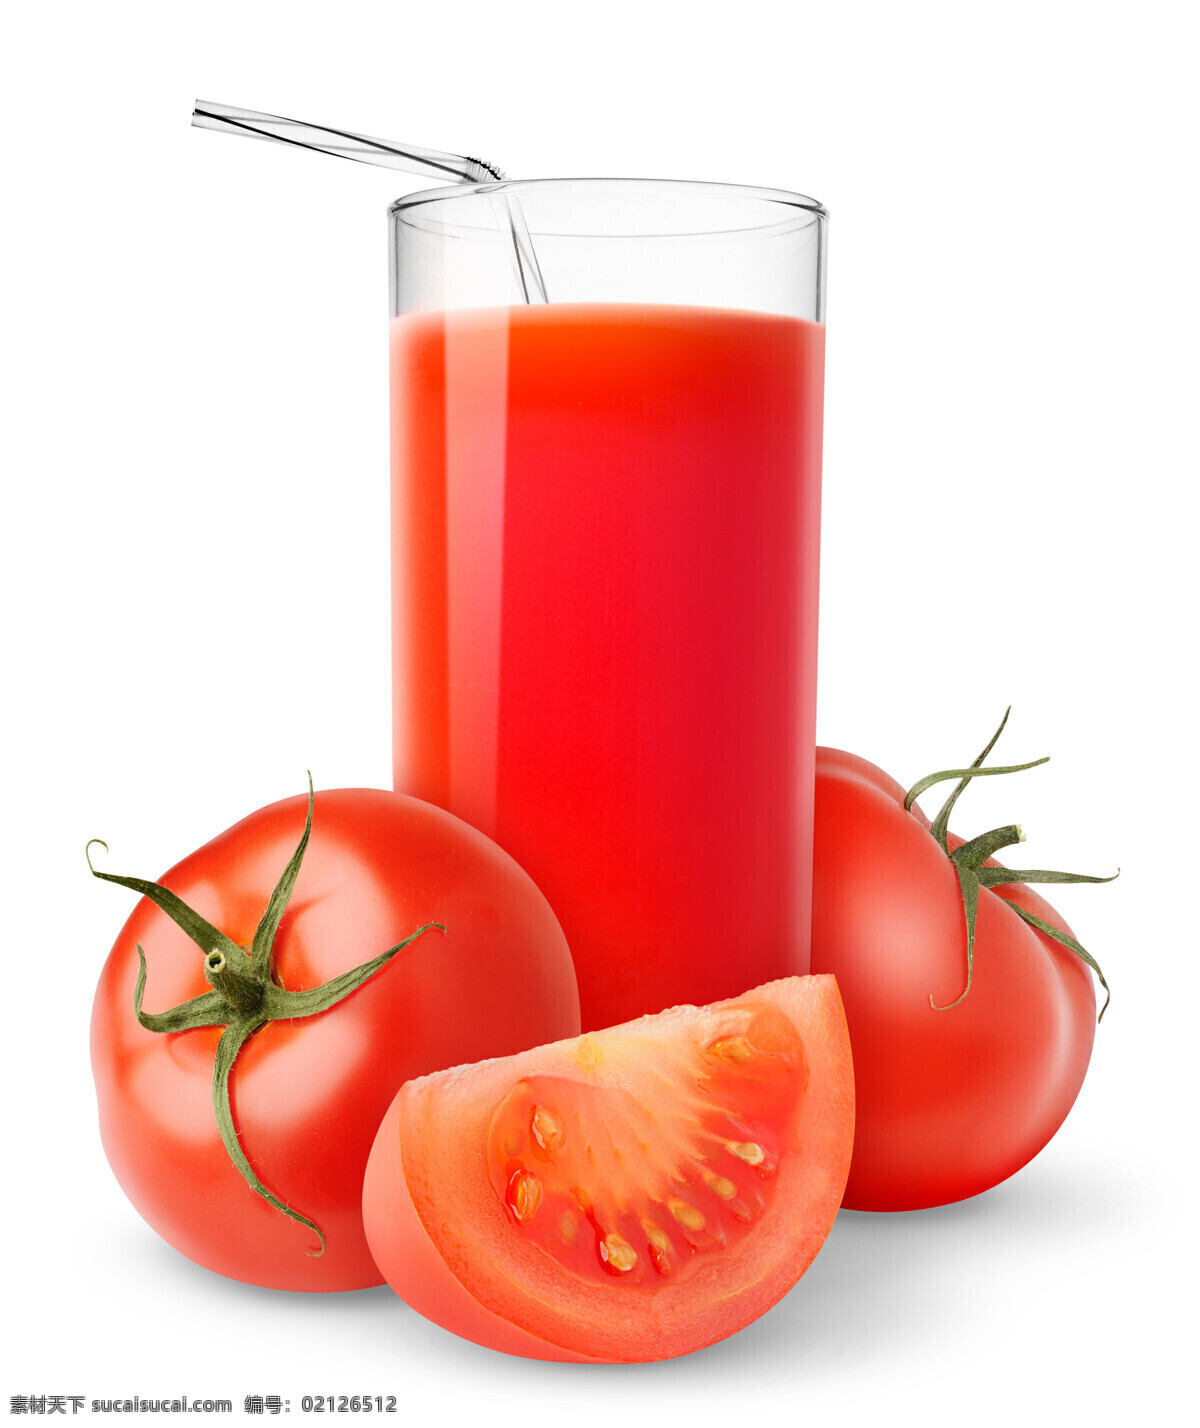 番茄汁 番茄 西红柿 维生素c 营养健康 果汁 鲜榨果汁 饮品 饮料 美味 营养 果汁饮料 餐饮美食 饮料酒水